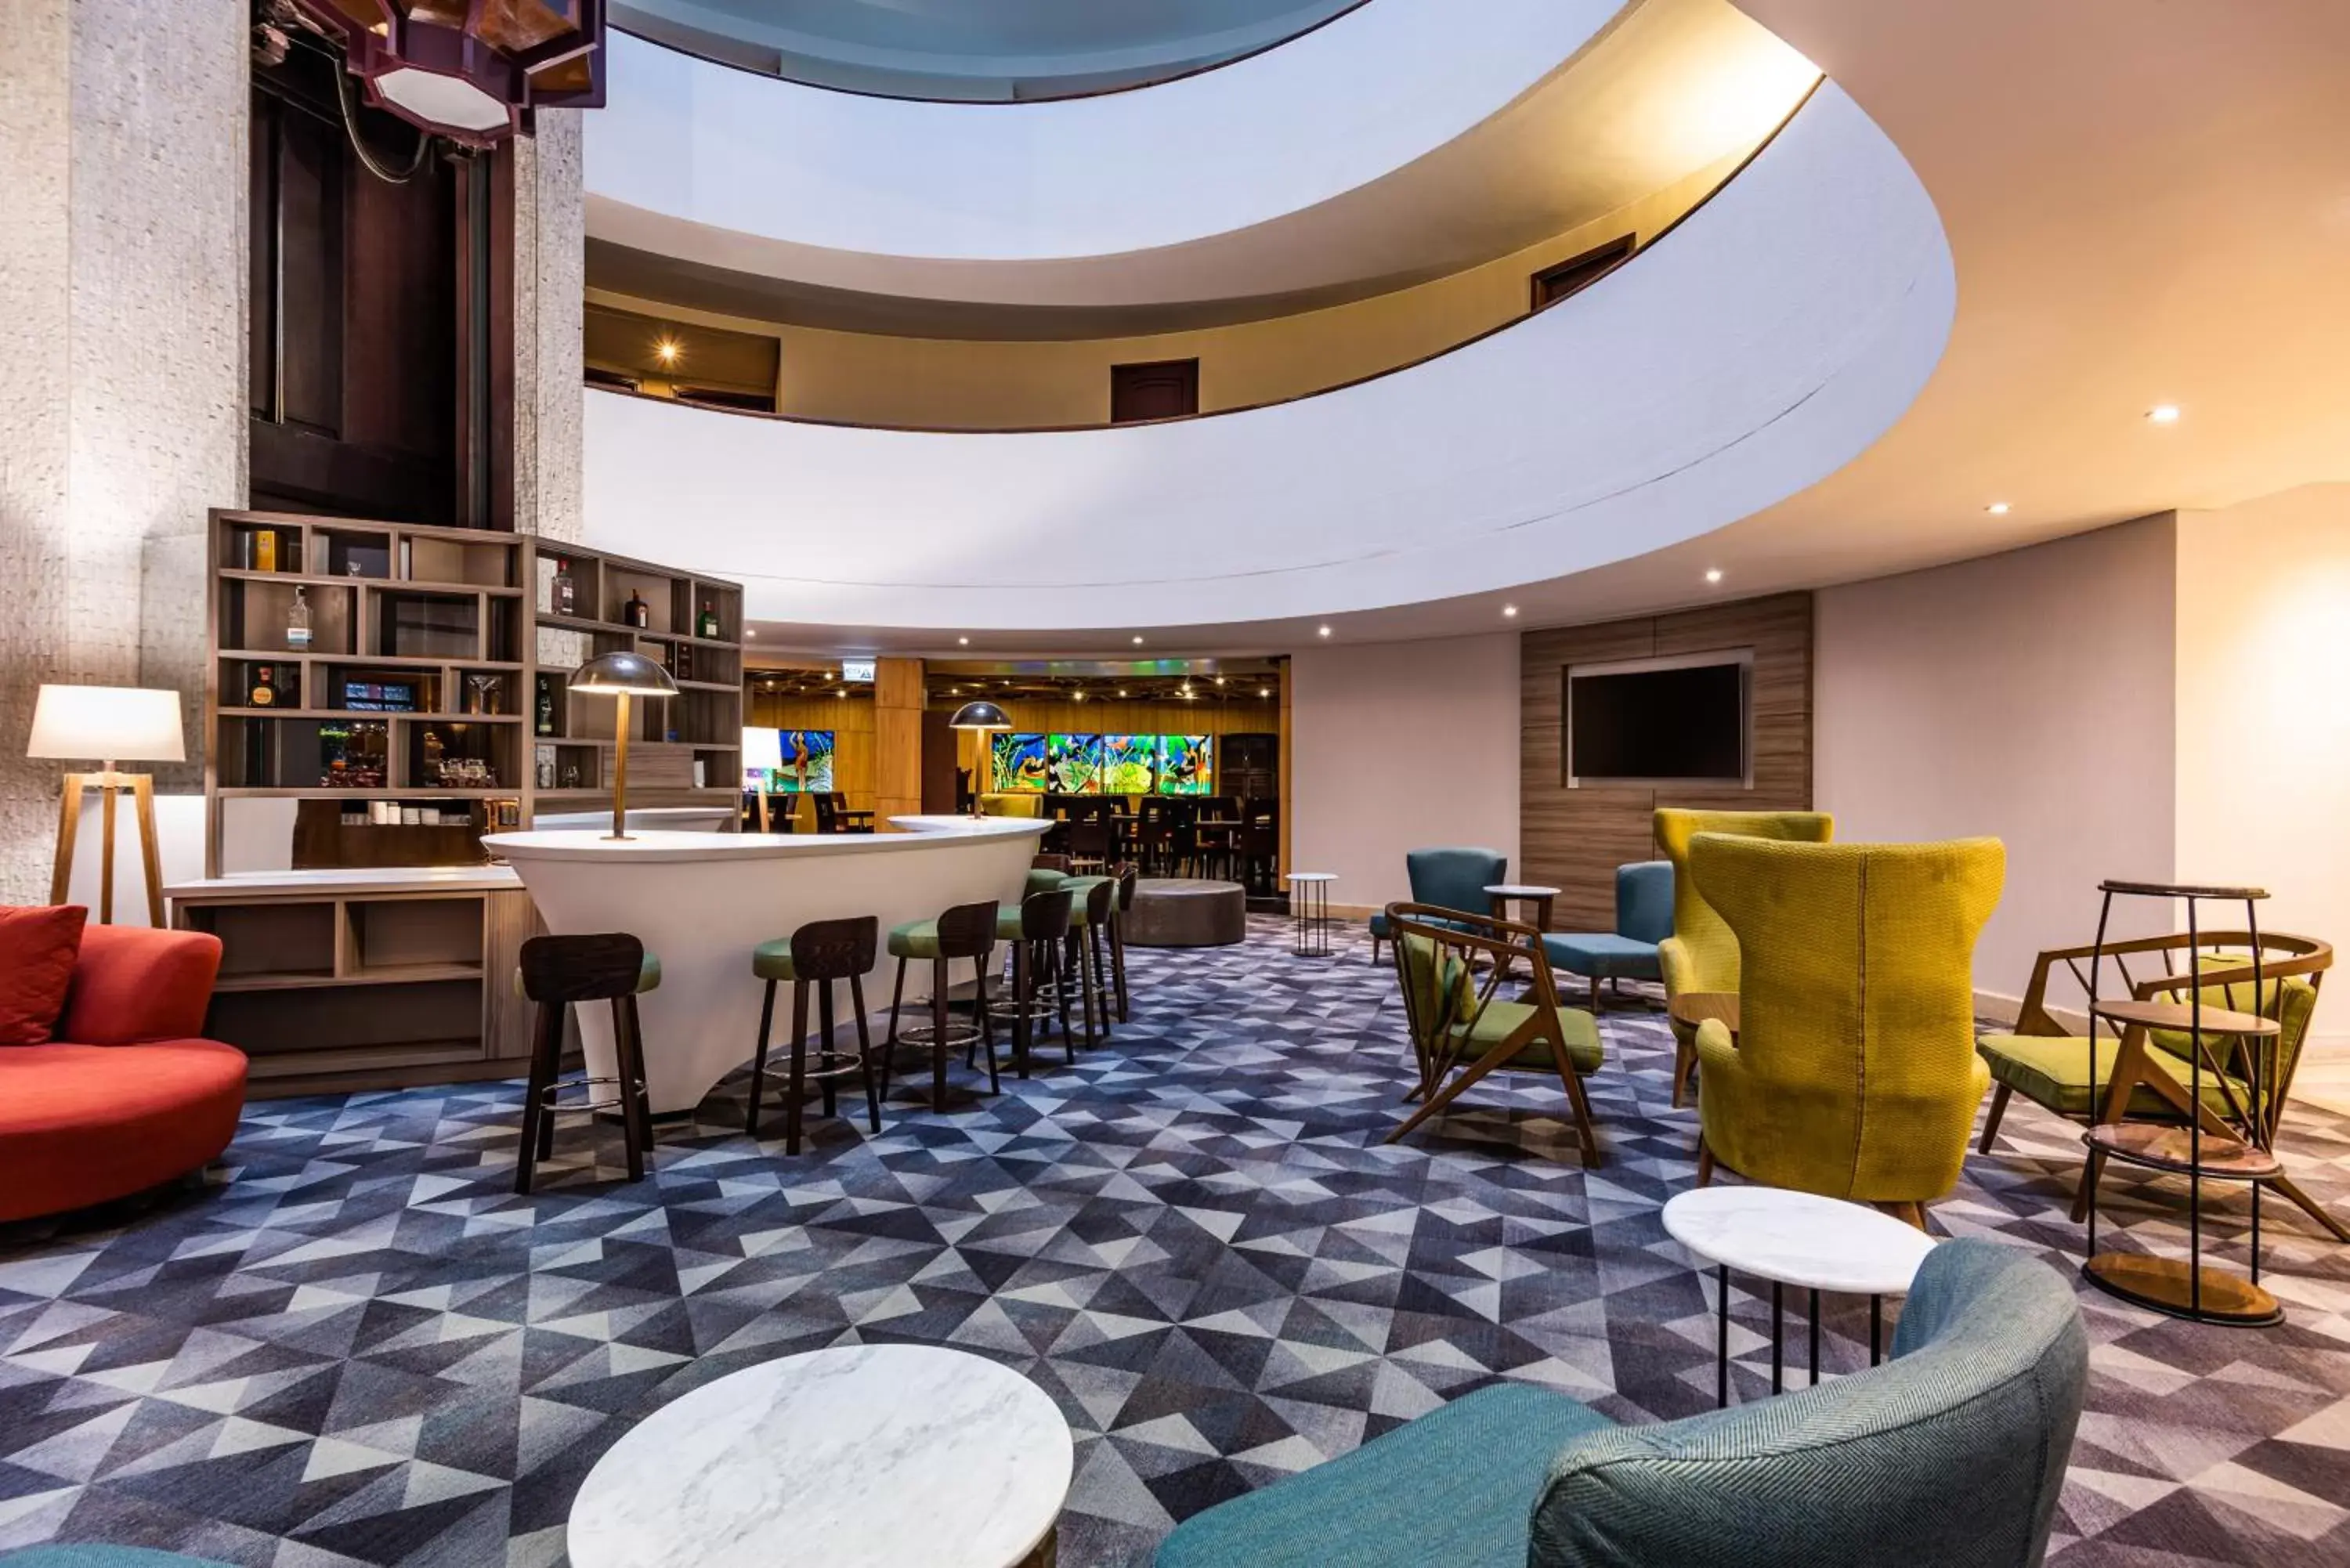 Lounge or bar in Cosmos 100 Hotel & Centro de Convenciones - Hoteles Cosmos